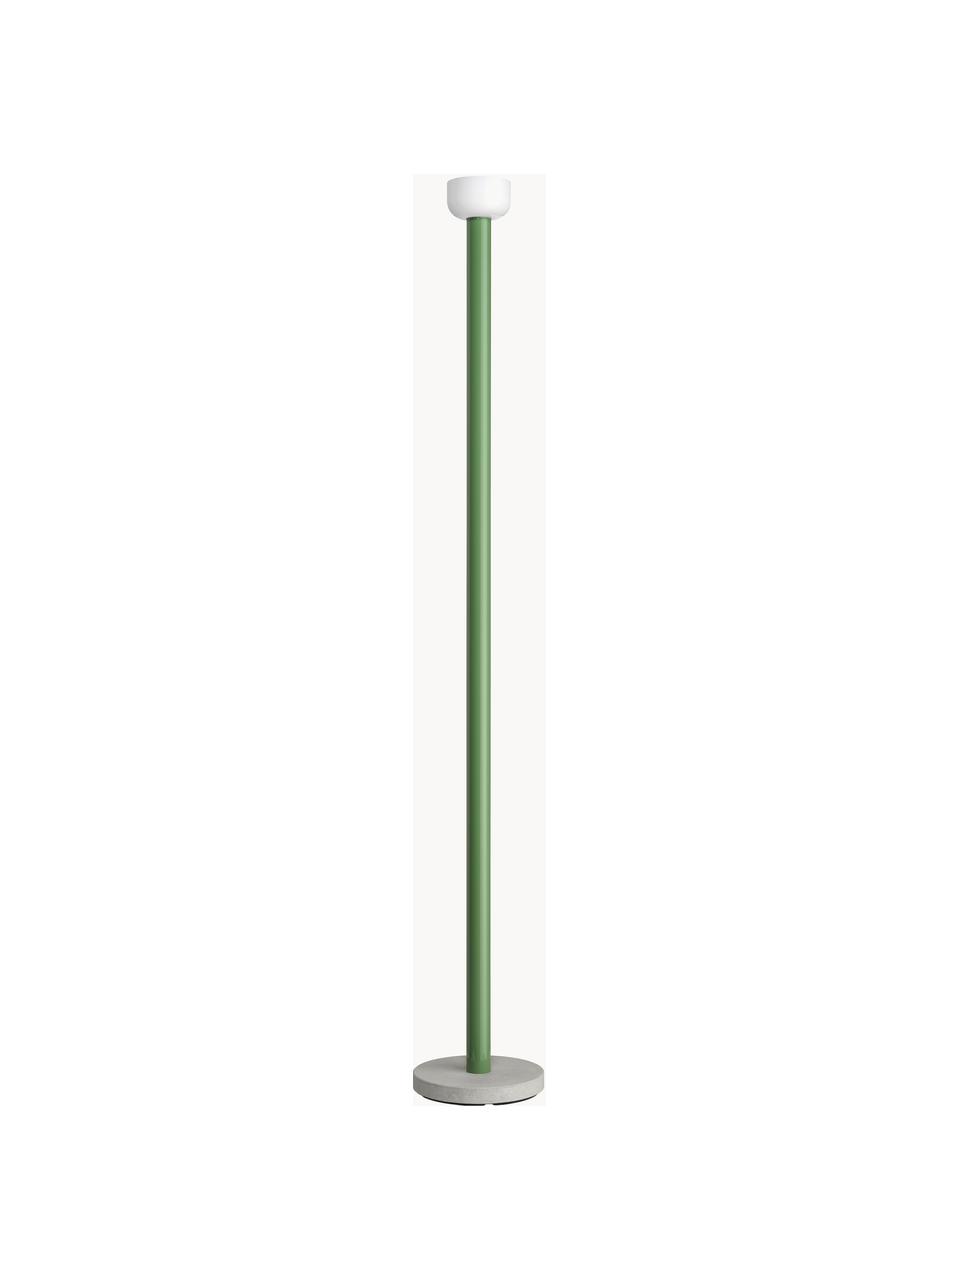 Lampa podłogowa LED z funkcją przyciemniania Bellhop, Zielony, W 178 cm